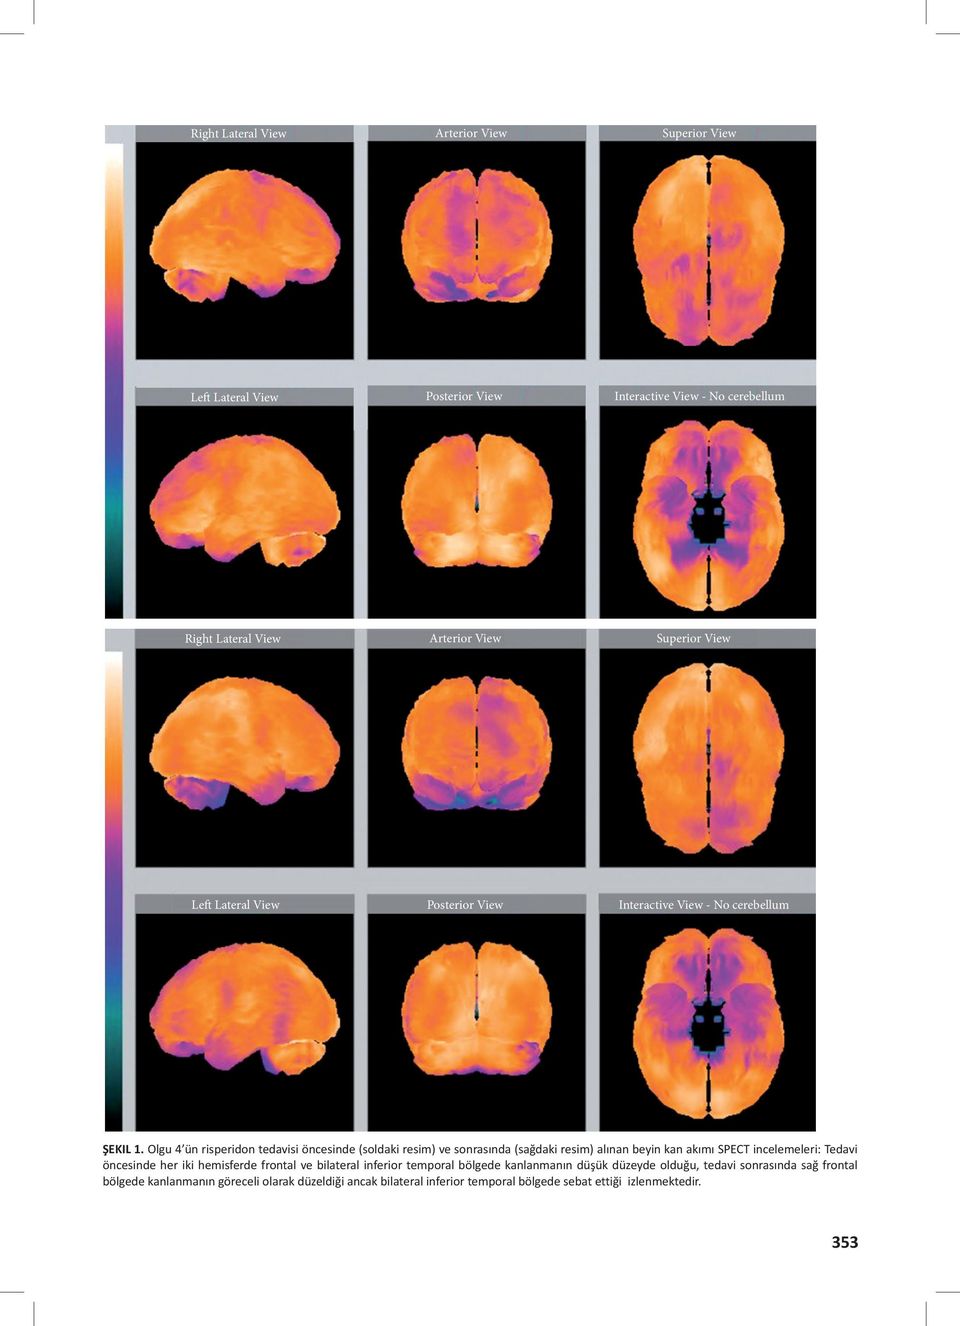 Olgu 4 ün risperidon tedavisi öncesinde (soldaki resim) ve sonrasında (sağdaki resim) alınan beyin kan akımı SPECT incelemeleri: Tedavi öncesinde her iki